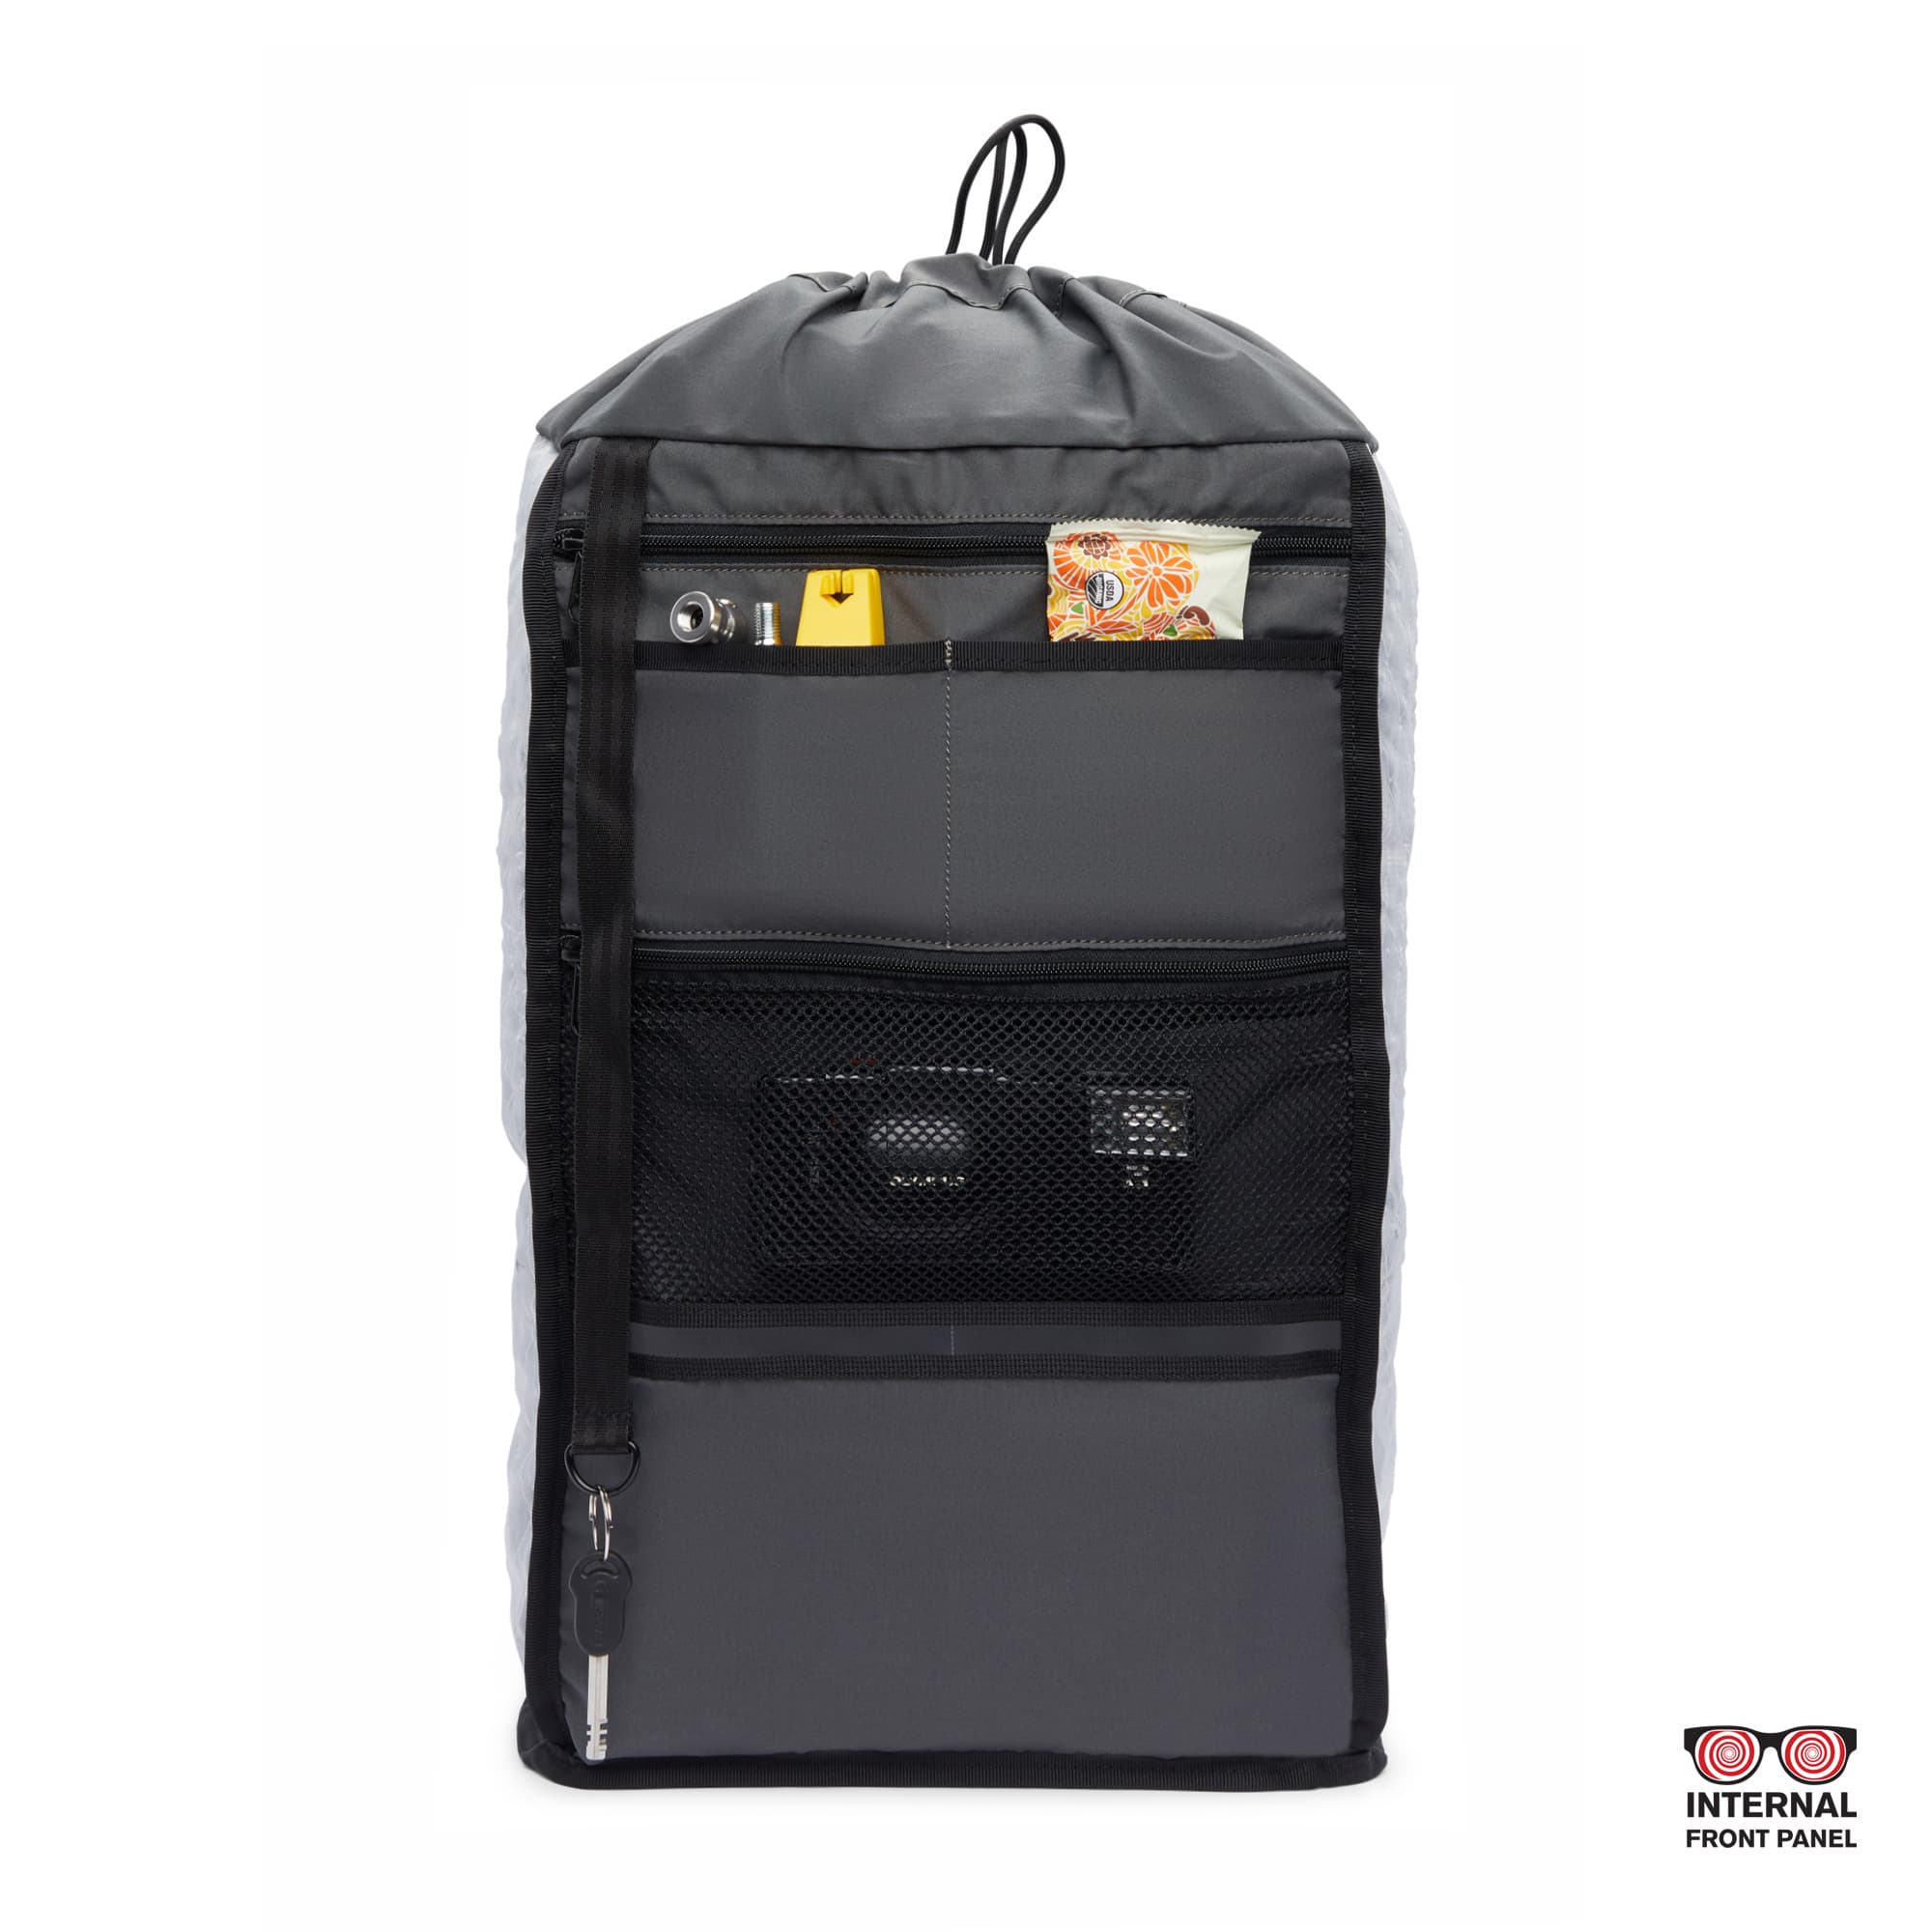 Tensile Ruckpack in black inside out pocket detail #color_black